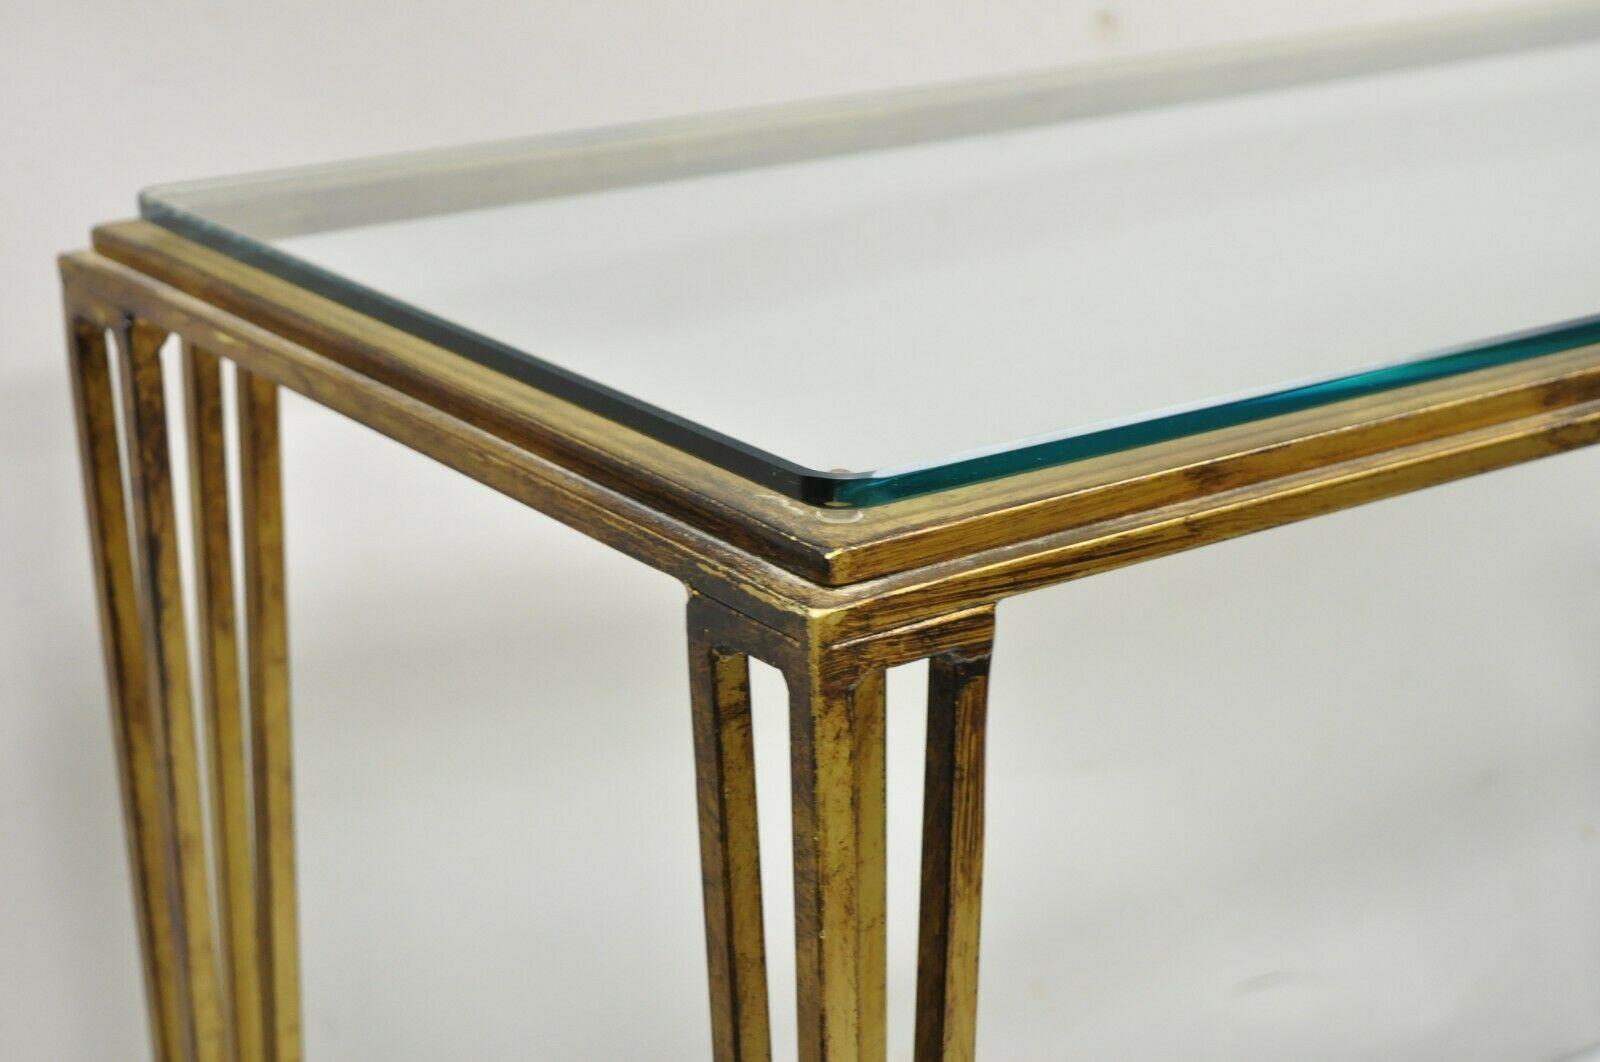 Verre Console canapé moderne italienne dorée et dorée à base en fer lourd avec plateau en verre, table d'entrée en vente